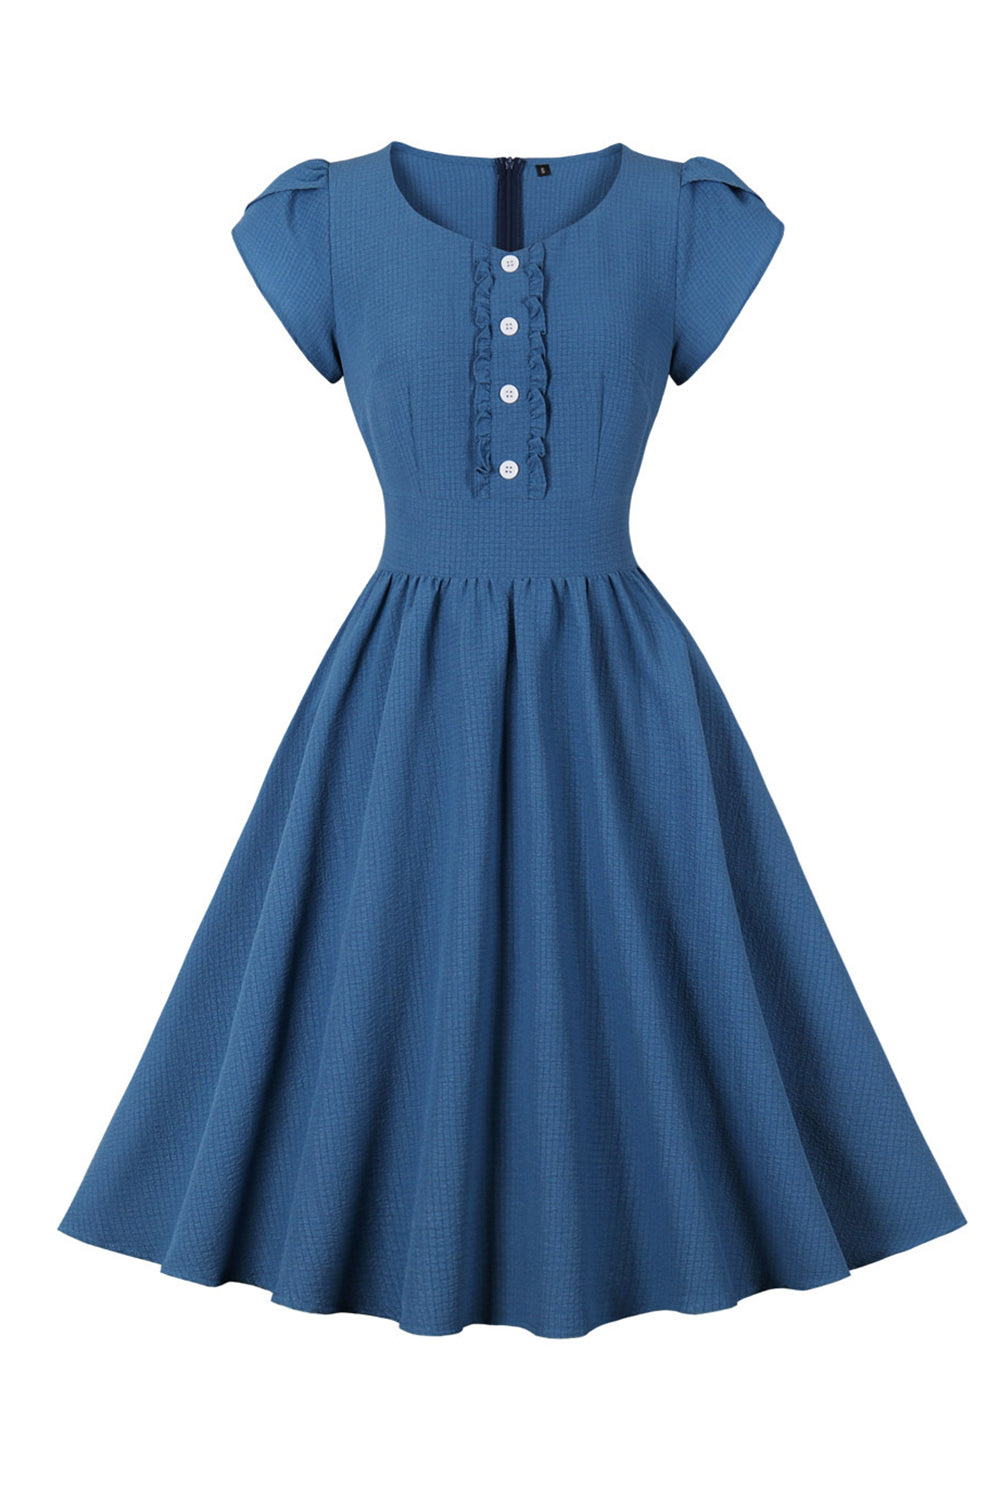 Azul Xadrez Vestido dos anos 1950 Com Babado